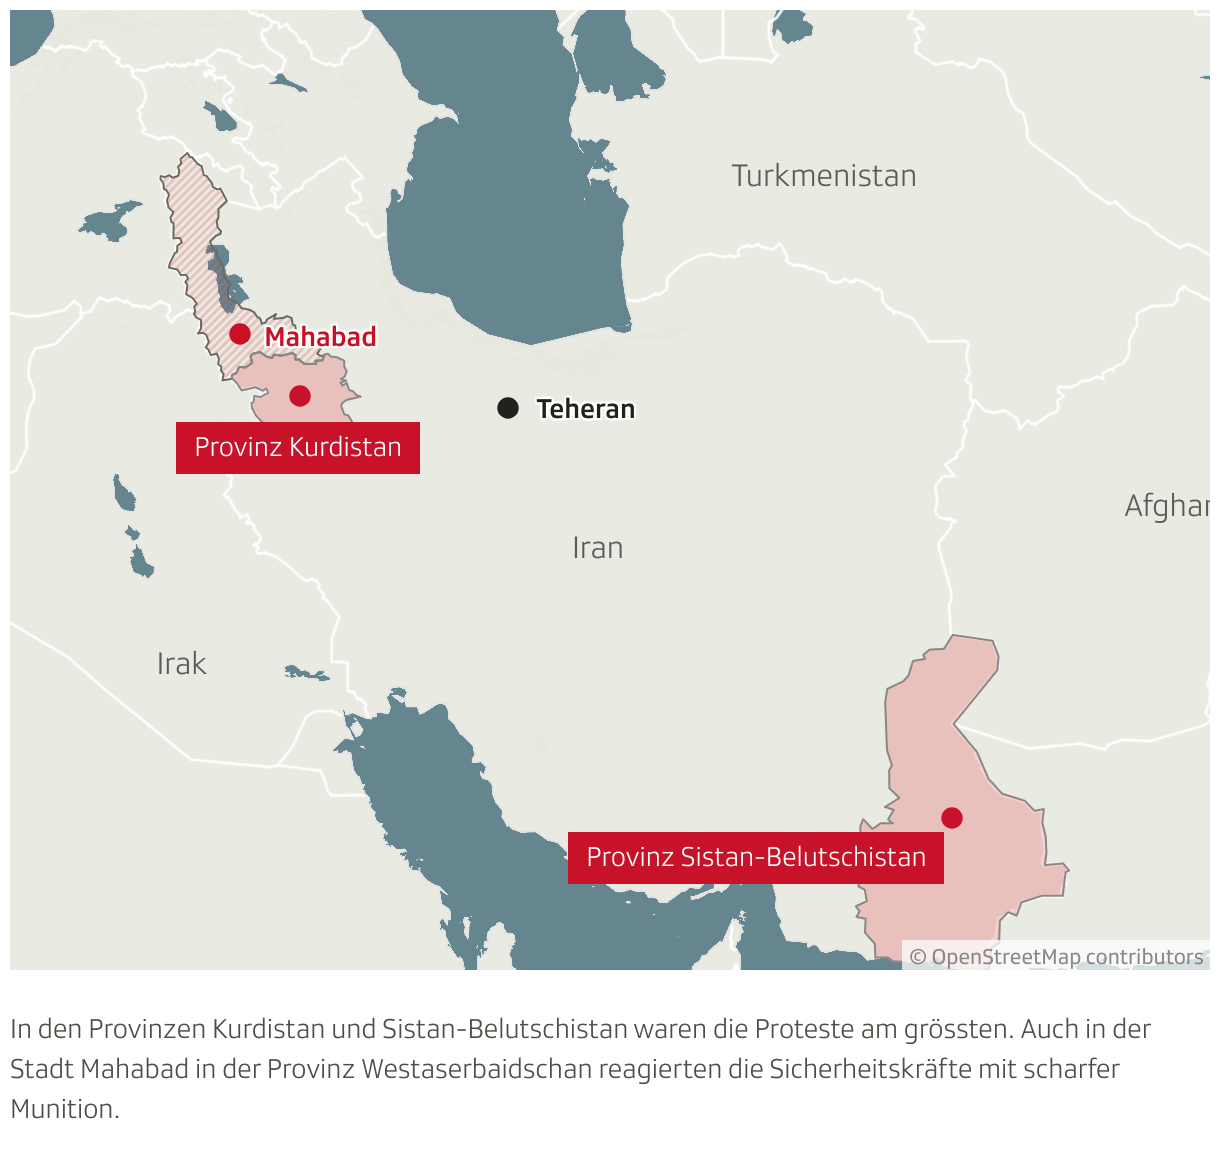 Kurdistan ist im Nordwesten des Landes und Sistan-Belutschistan im Südwesten. In diesen zwei Gebieten waren die Proteste am grössten und die Repression am blutigsten.